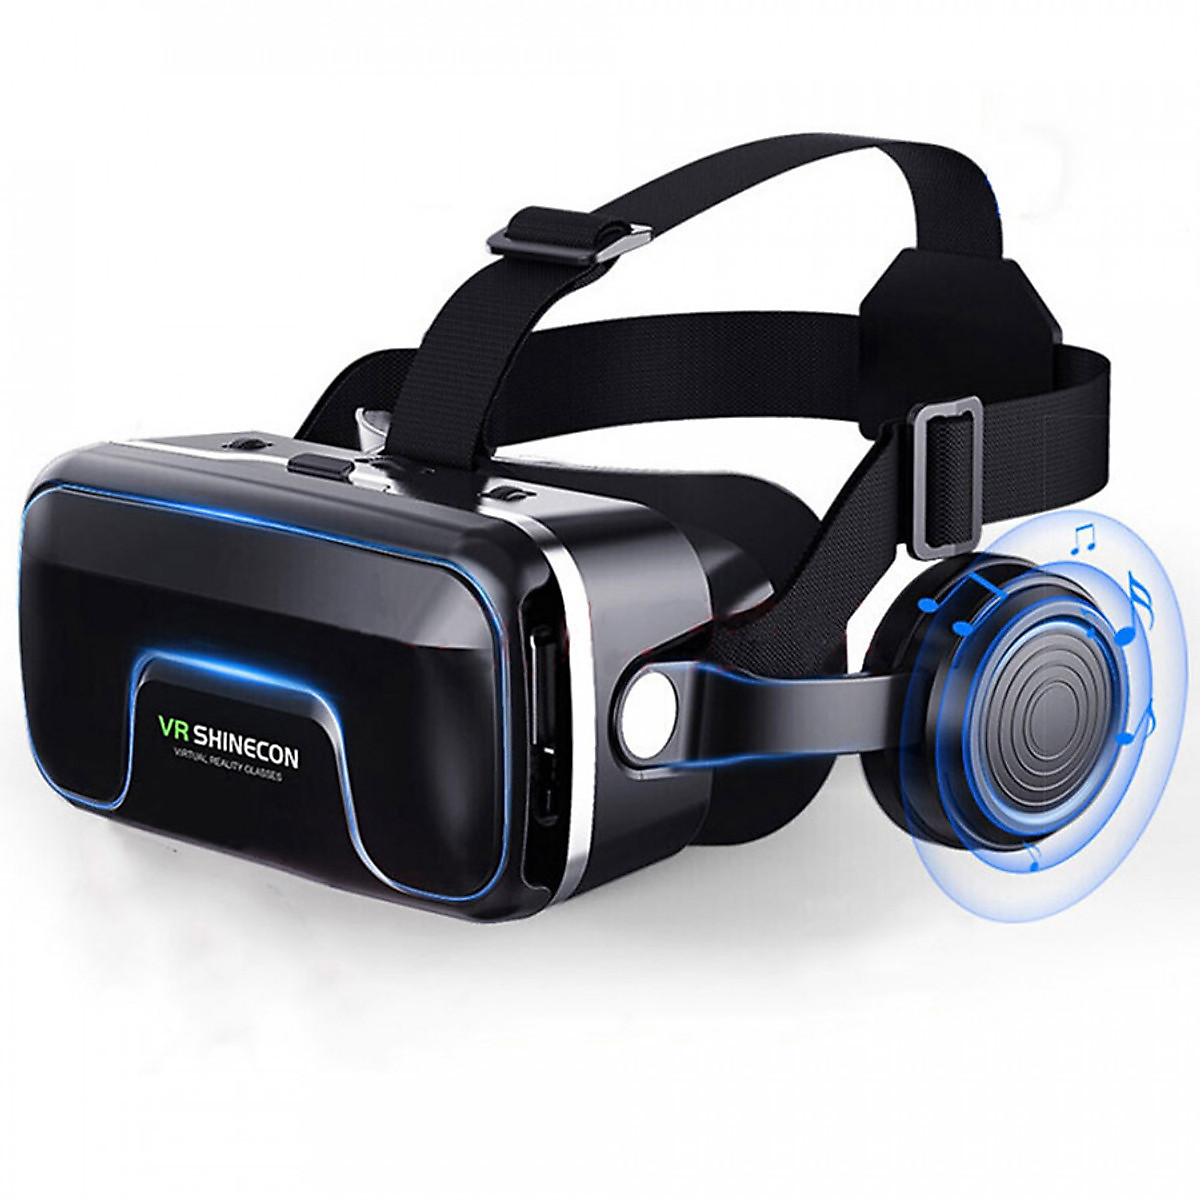 Kính thực tế ảo 3D VR Shinecon G04EA - Phiên bản Hot 2020 ,kính thực tế ảo xem phim, kính thực tế ảo chơi game - Hàng nhập khẩu